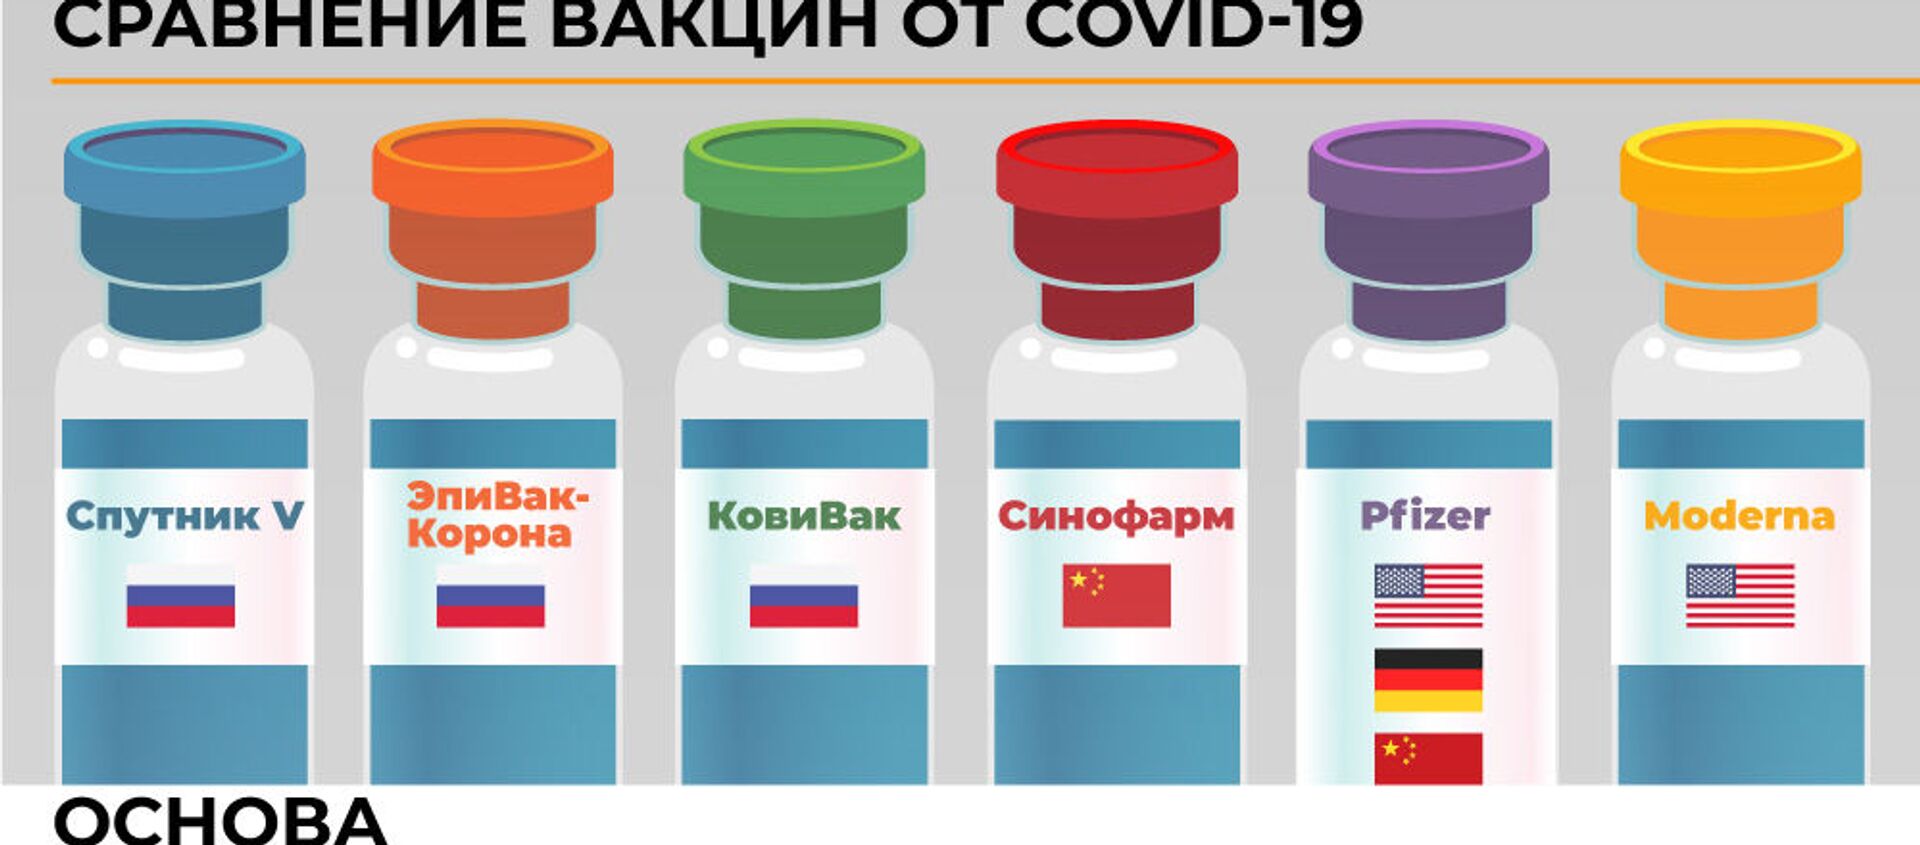 Сравнение вакцин он Covid-19 - Sputnik Армения, 1920, 20.02.2021